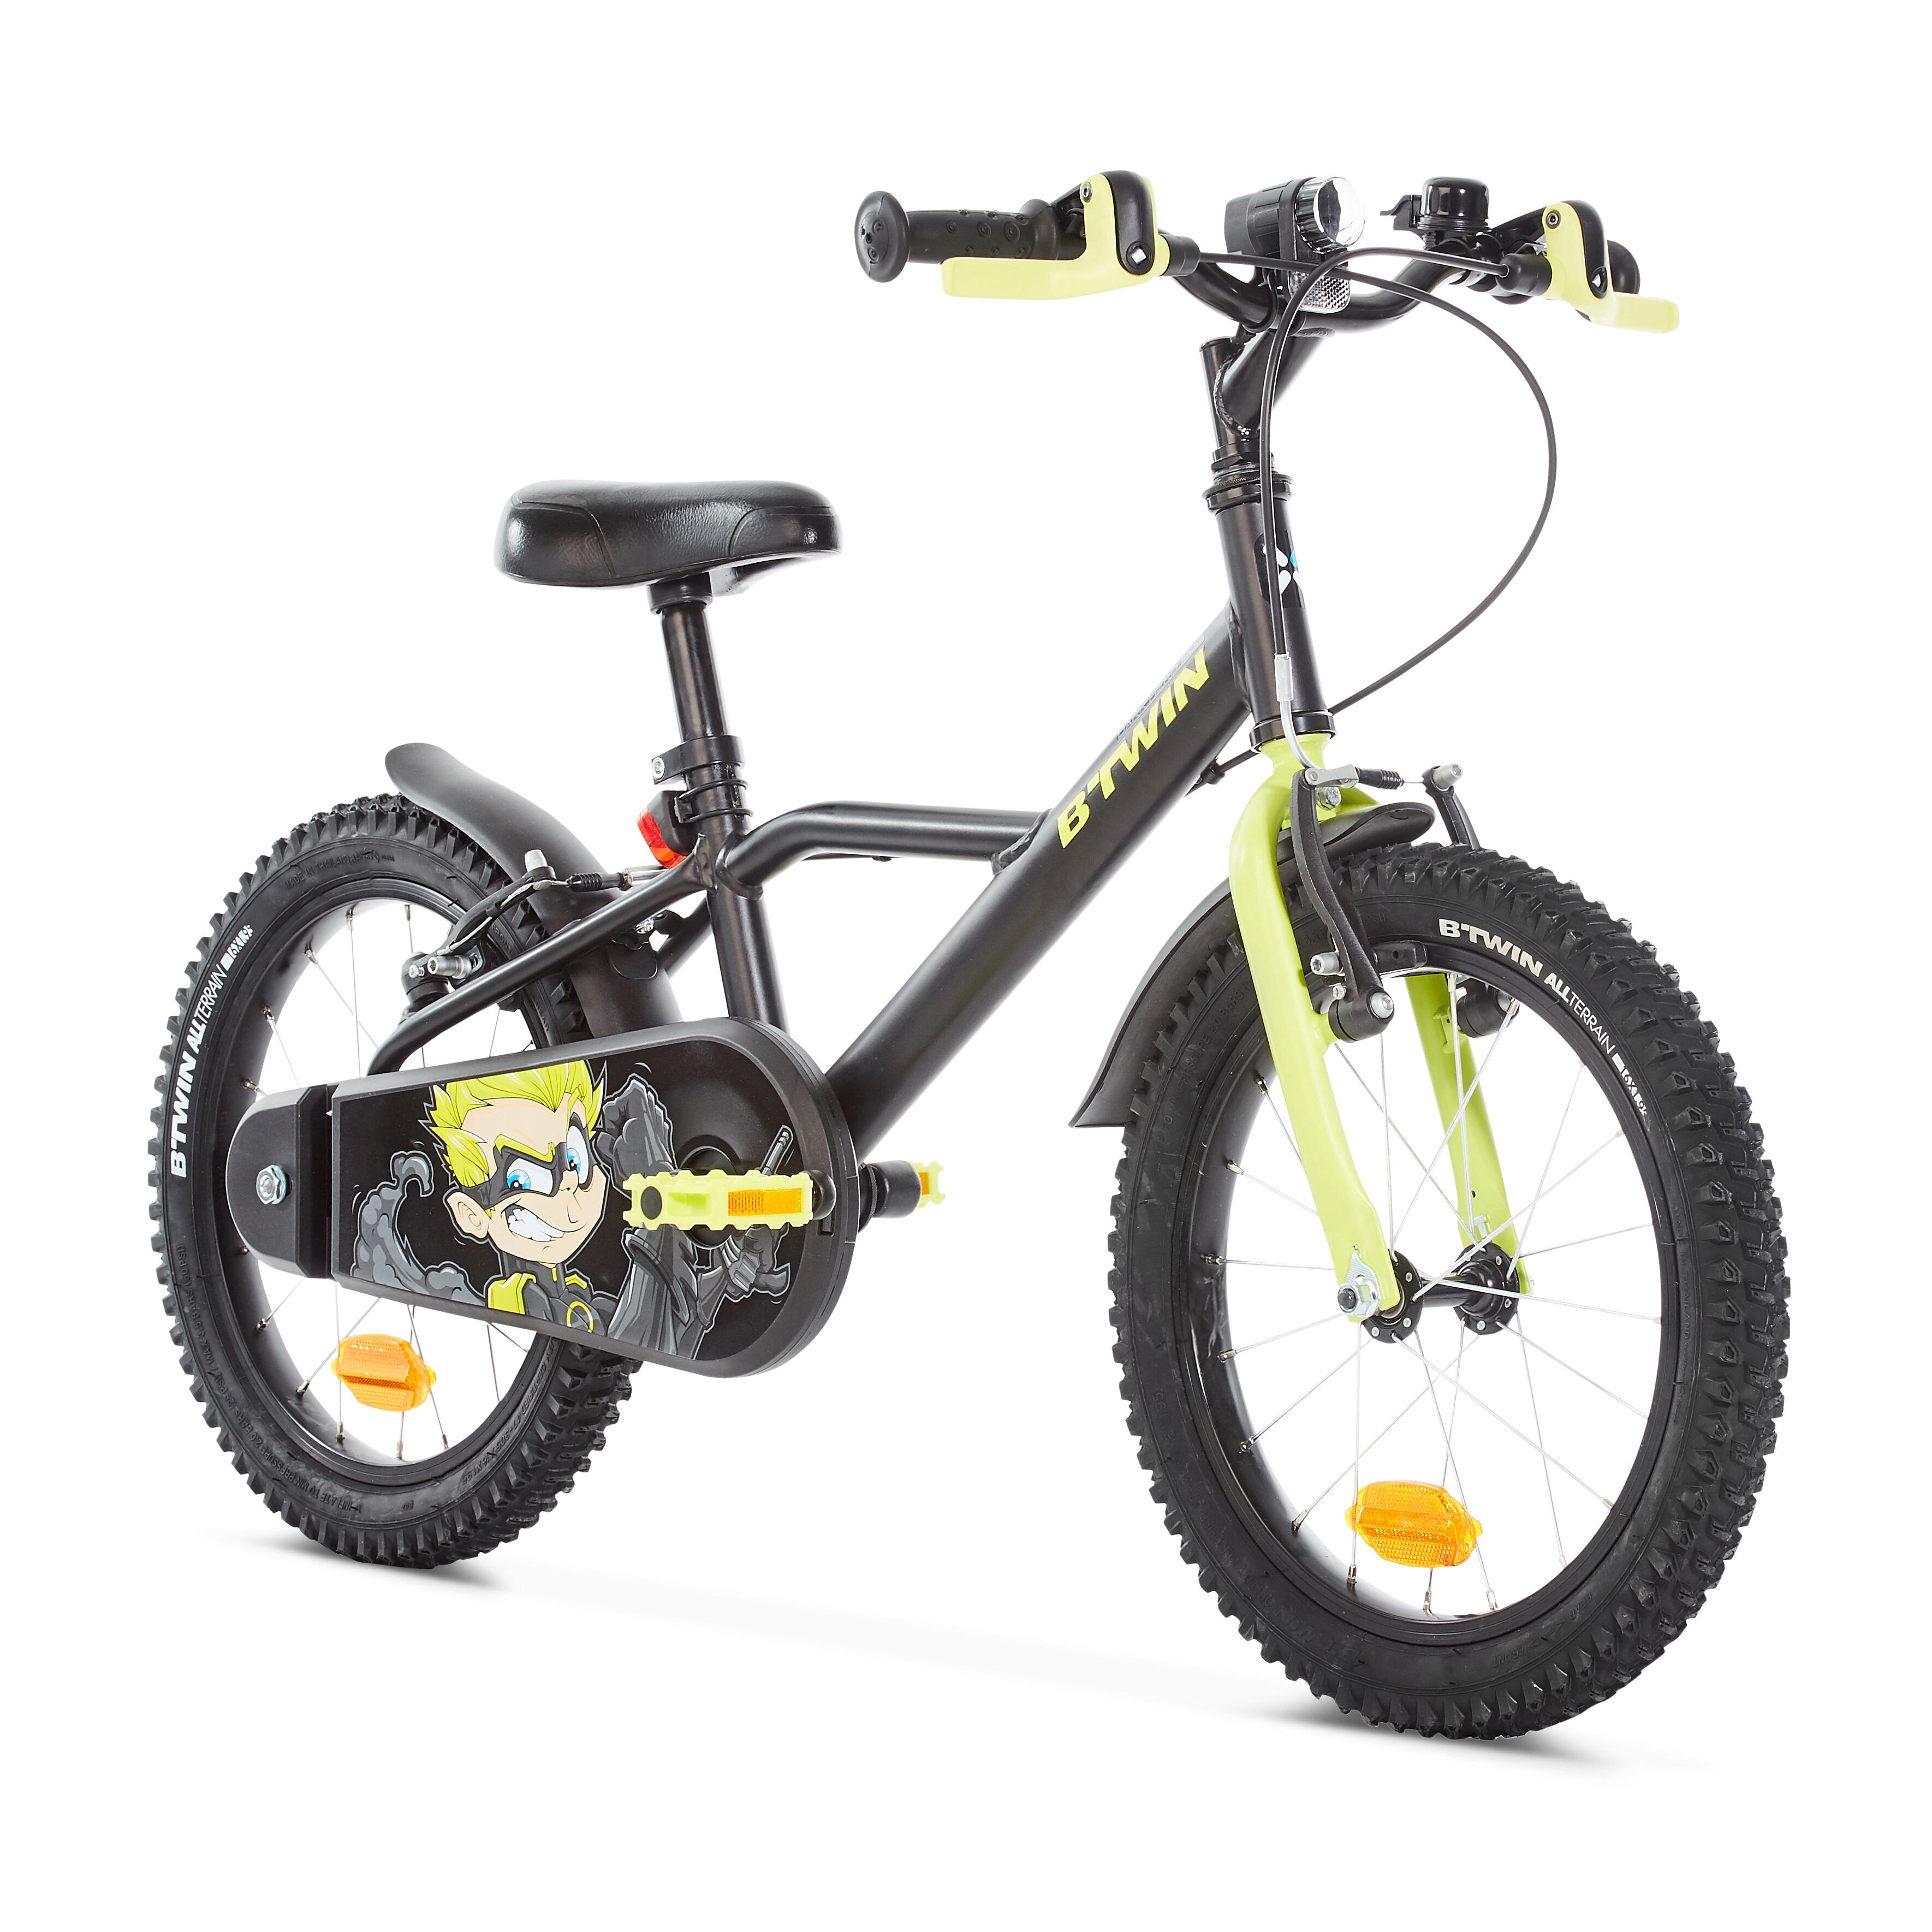 Велосипед для 11 лет мальчику. Btwin 16 велосипед детский. Детский велосипед от 4 до 6 лет прогулочный 16" heroboy 500 Btwin. Велосипед детский Декатлон b Twin. Детский велосипед b'Twin heroboy 500 16.